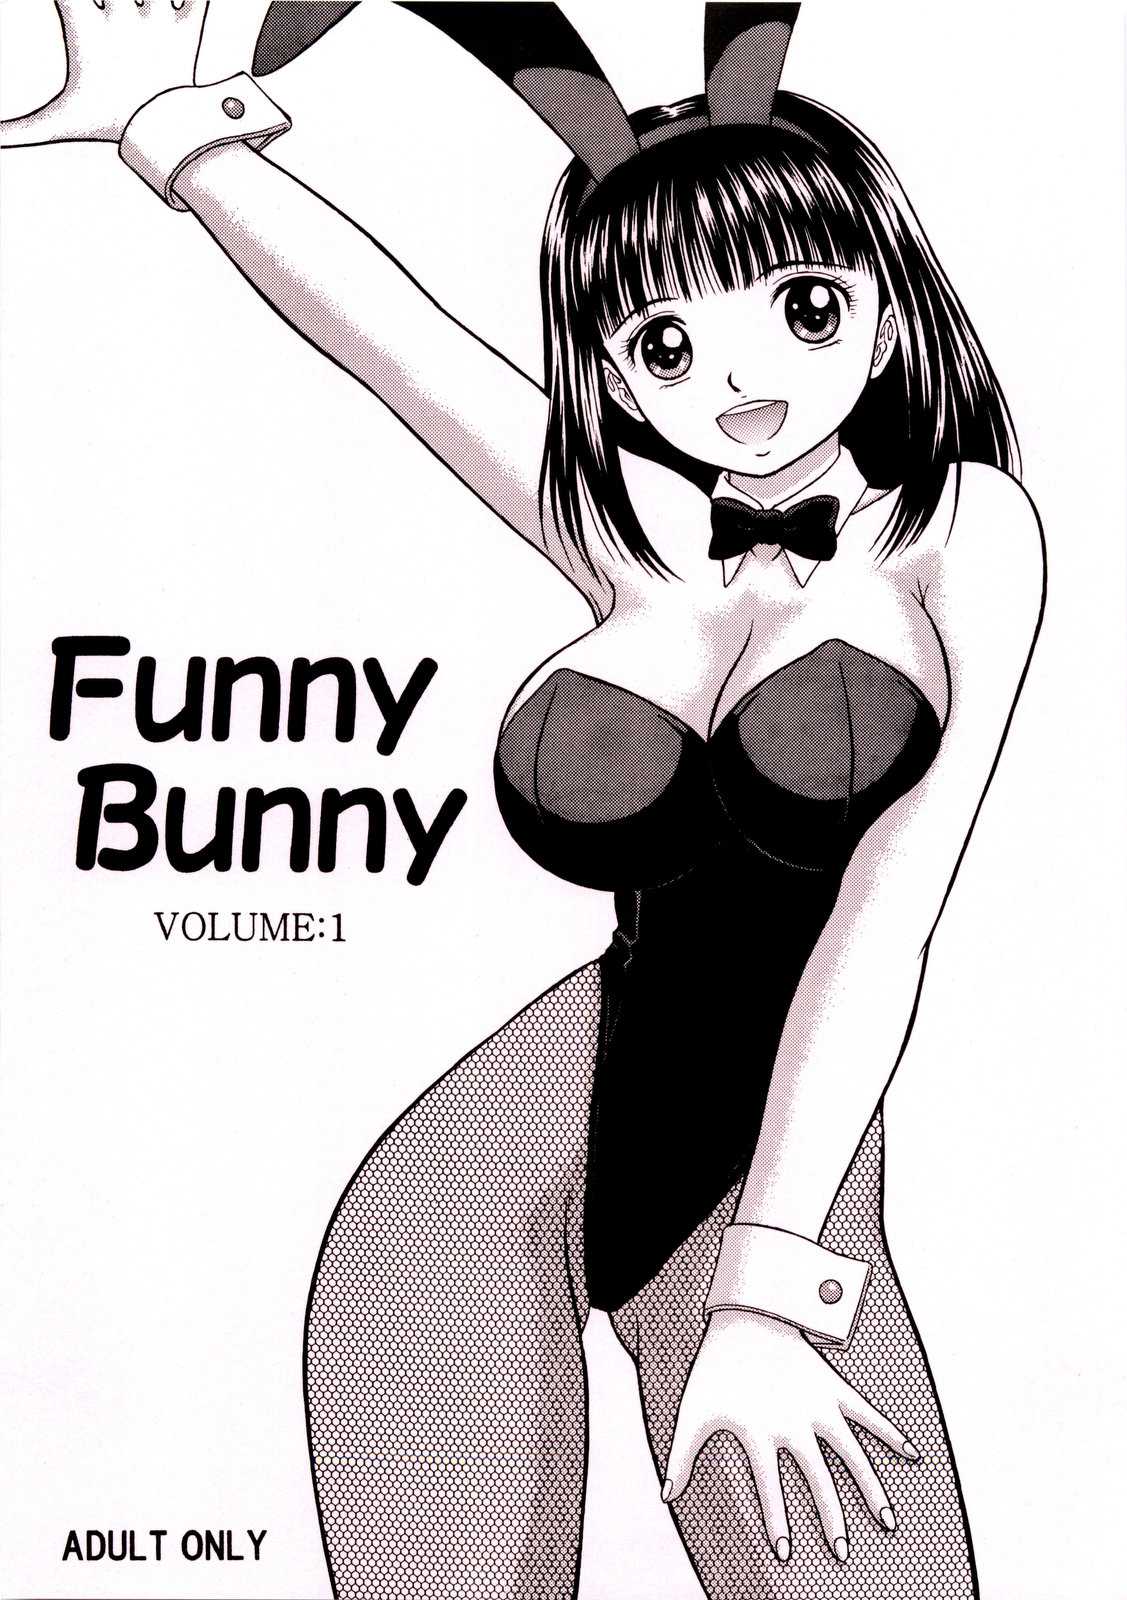 (C77) [D&#039;ERLANGER] Funny Bunny VOLUME 1 (Original) 